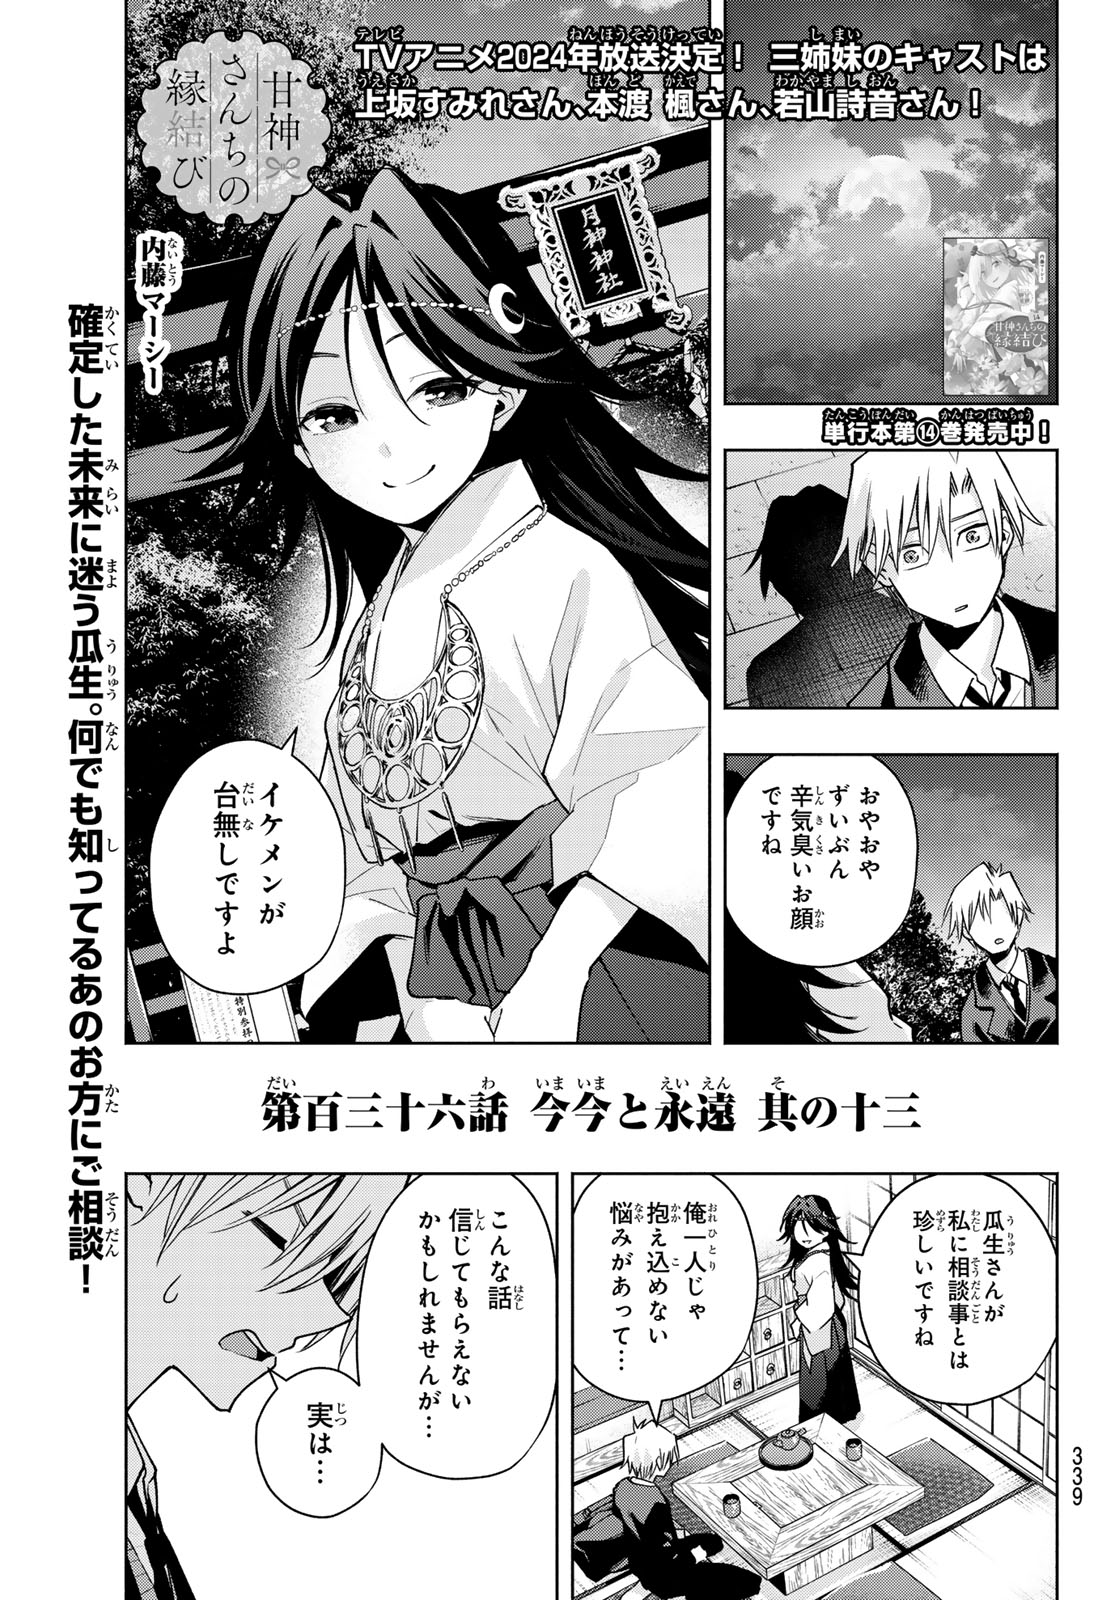 Amagami-san Chi no Enmusubi - Chapter 136 - Page 1